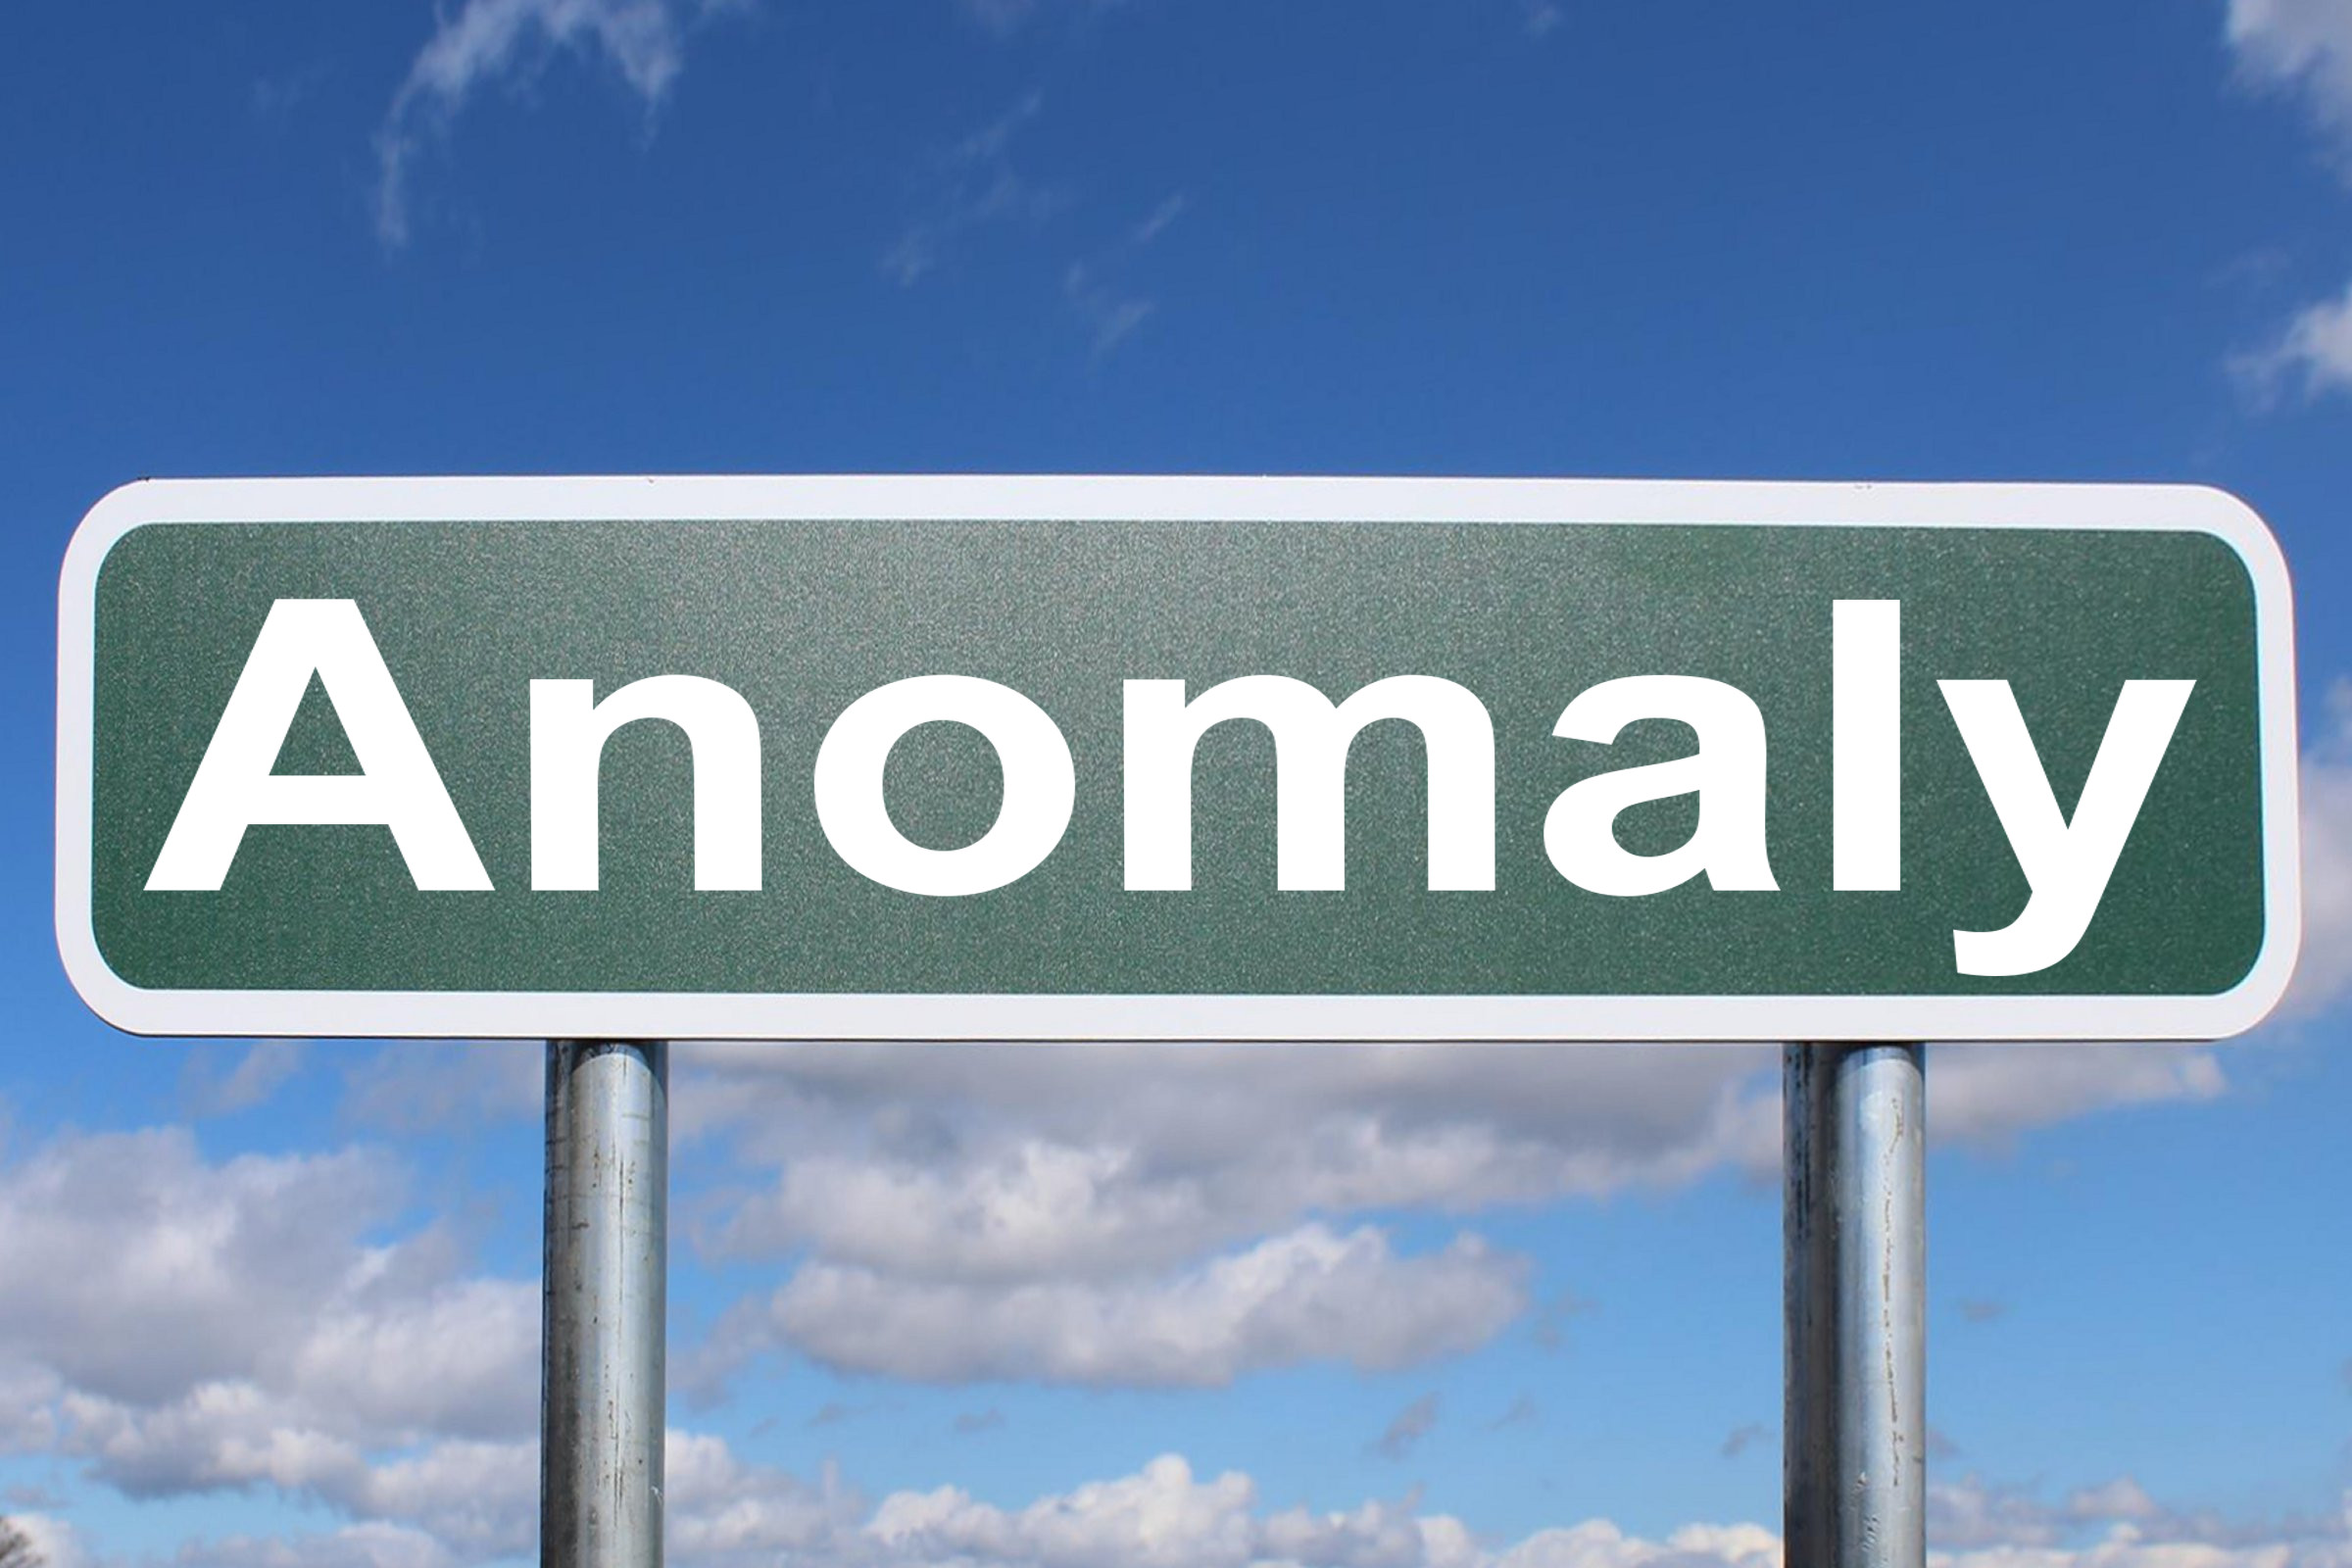 anomaly